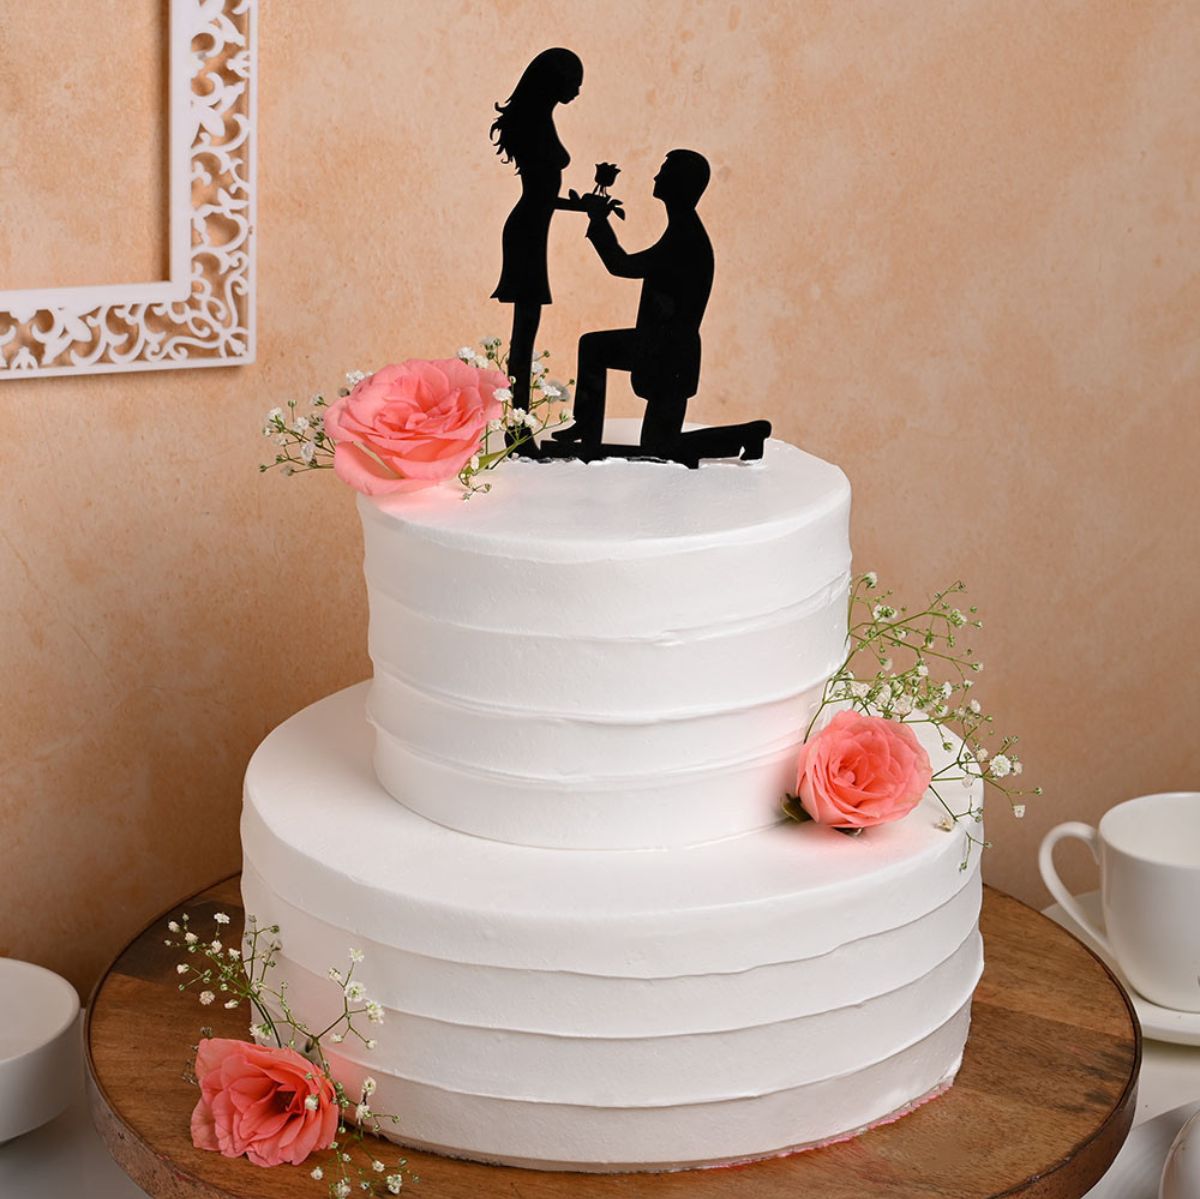 Bride And Groom Fondant Wedding Cake - Dough and Cream